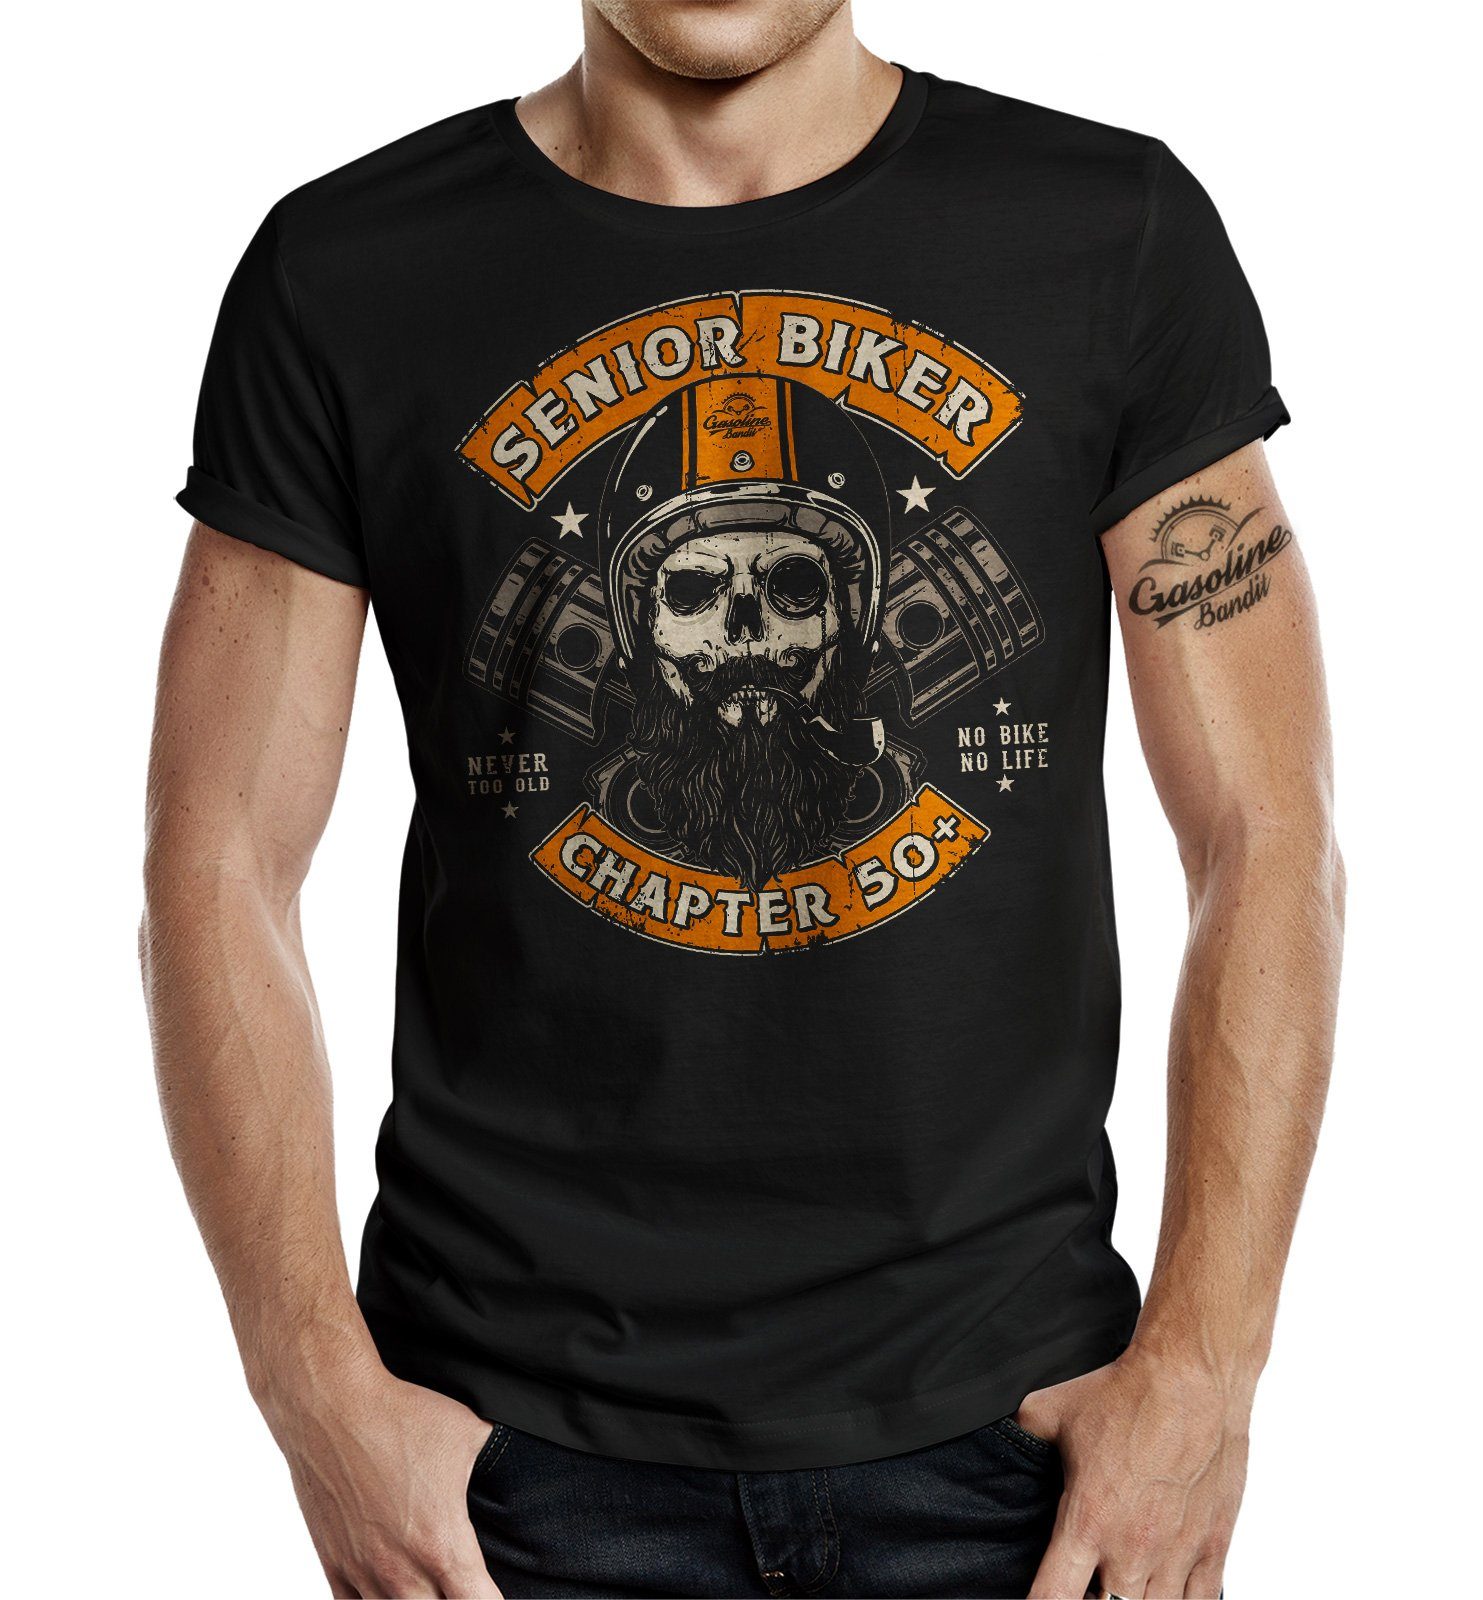 GASOLINE BANDIT® T-Shirt für den älteren Motorradfahrer - Senior Biker Chapter 50+